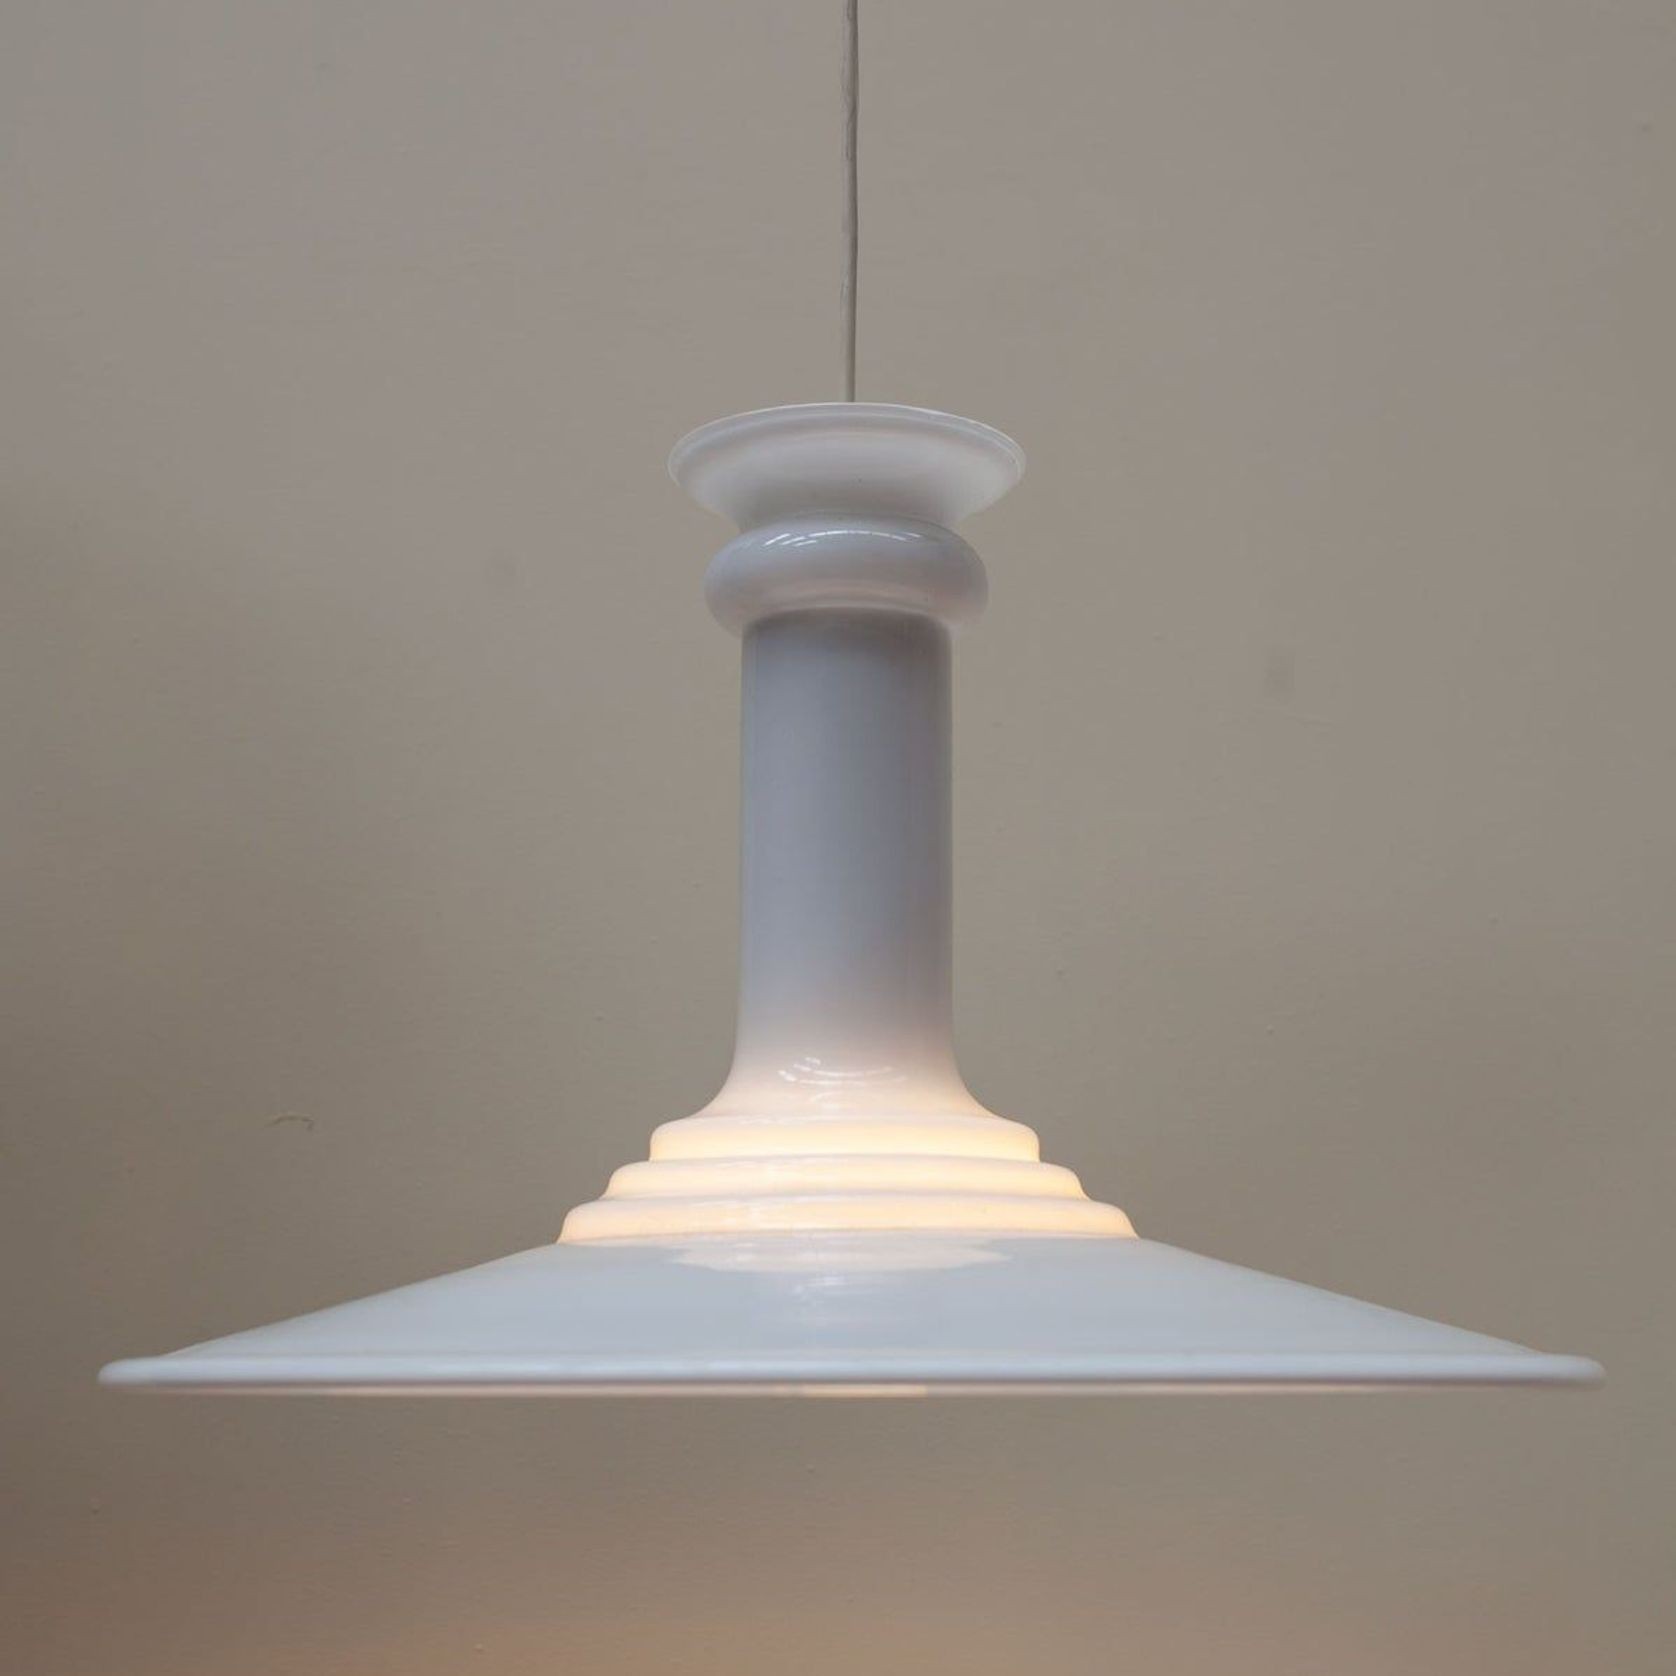 Pendant Lamp by Sidse Werner gallery detail image